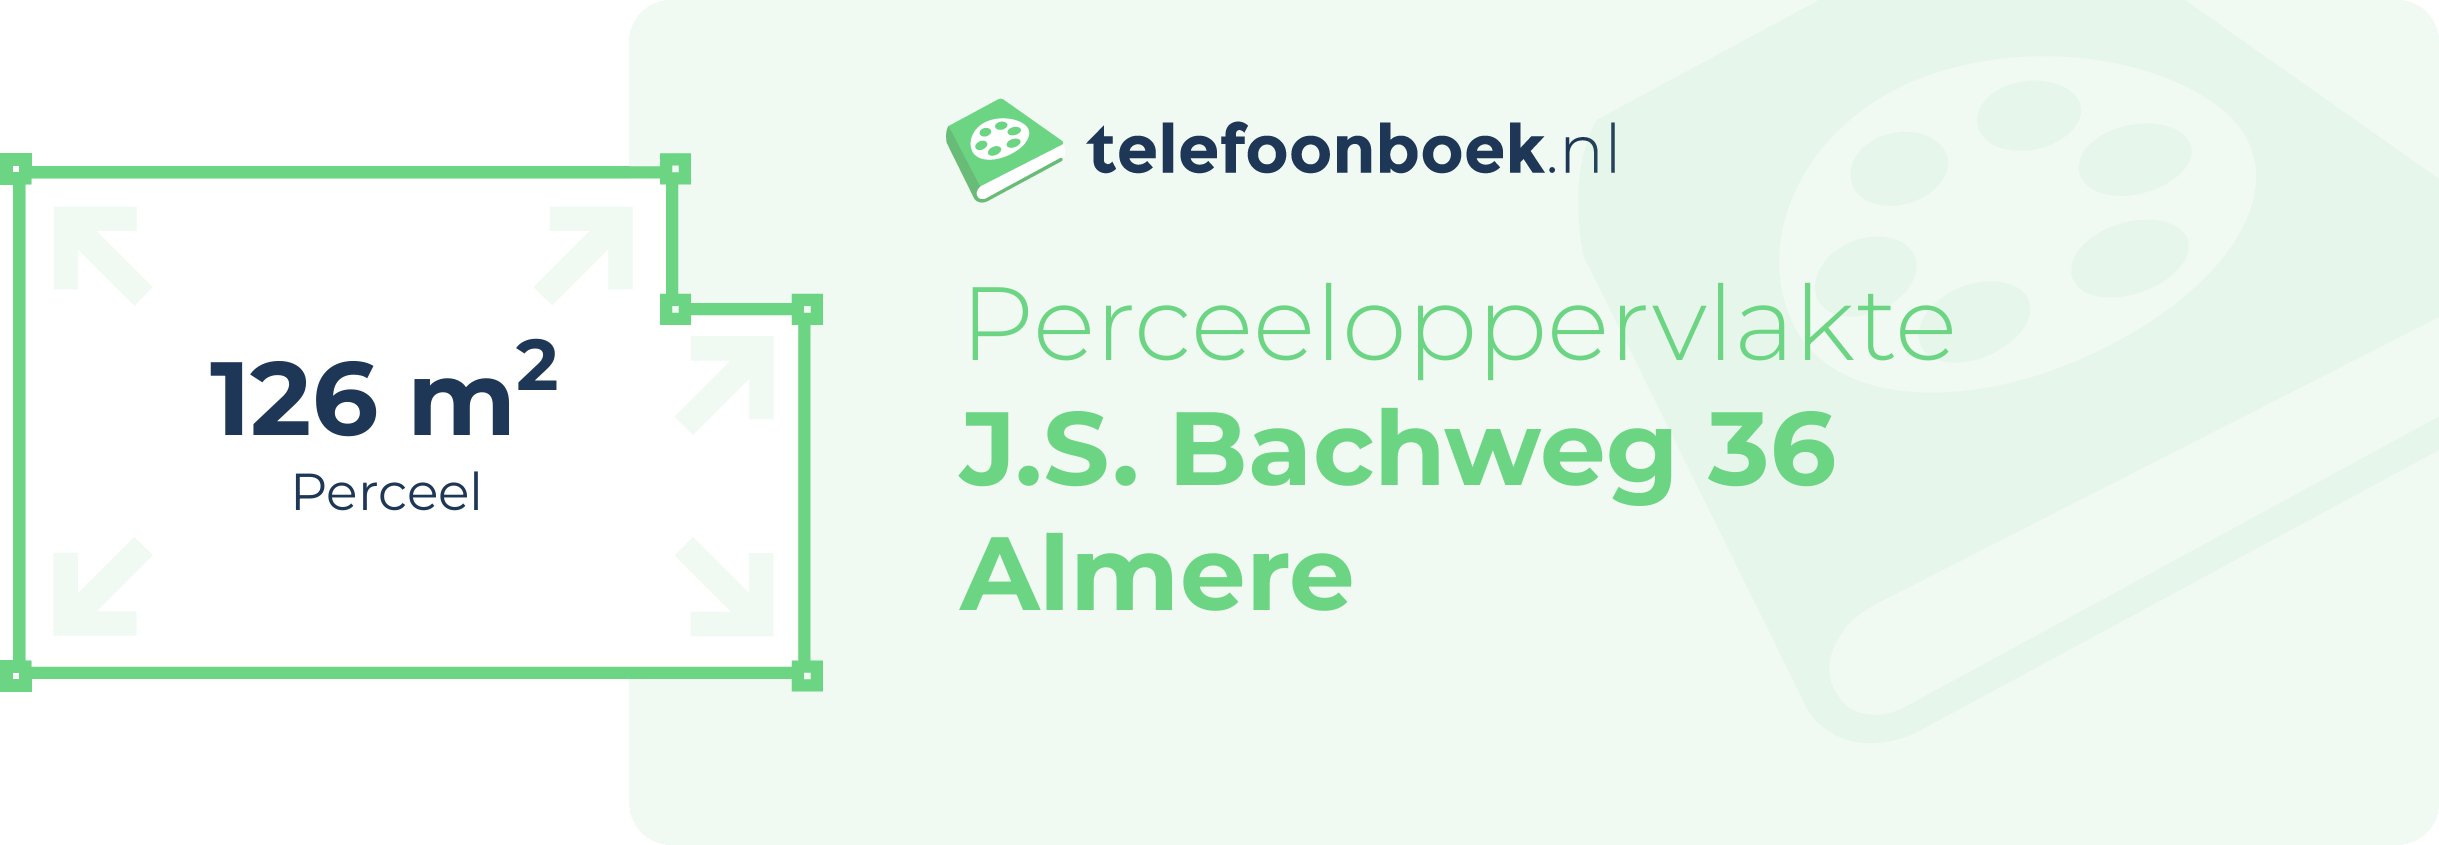 Perceeloppervlakte J.S. Bachweg 36 Almere